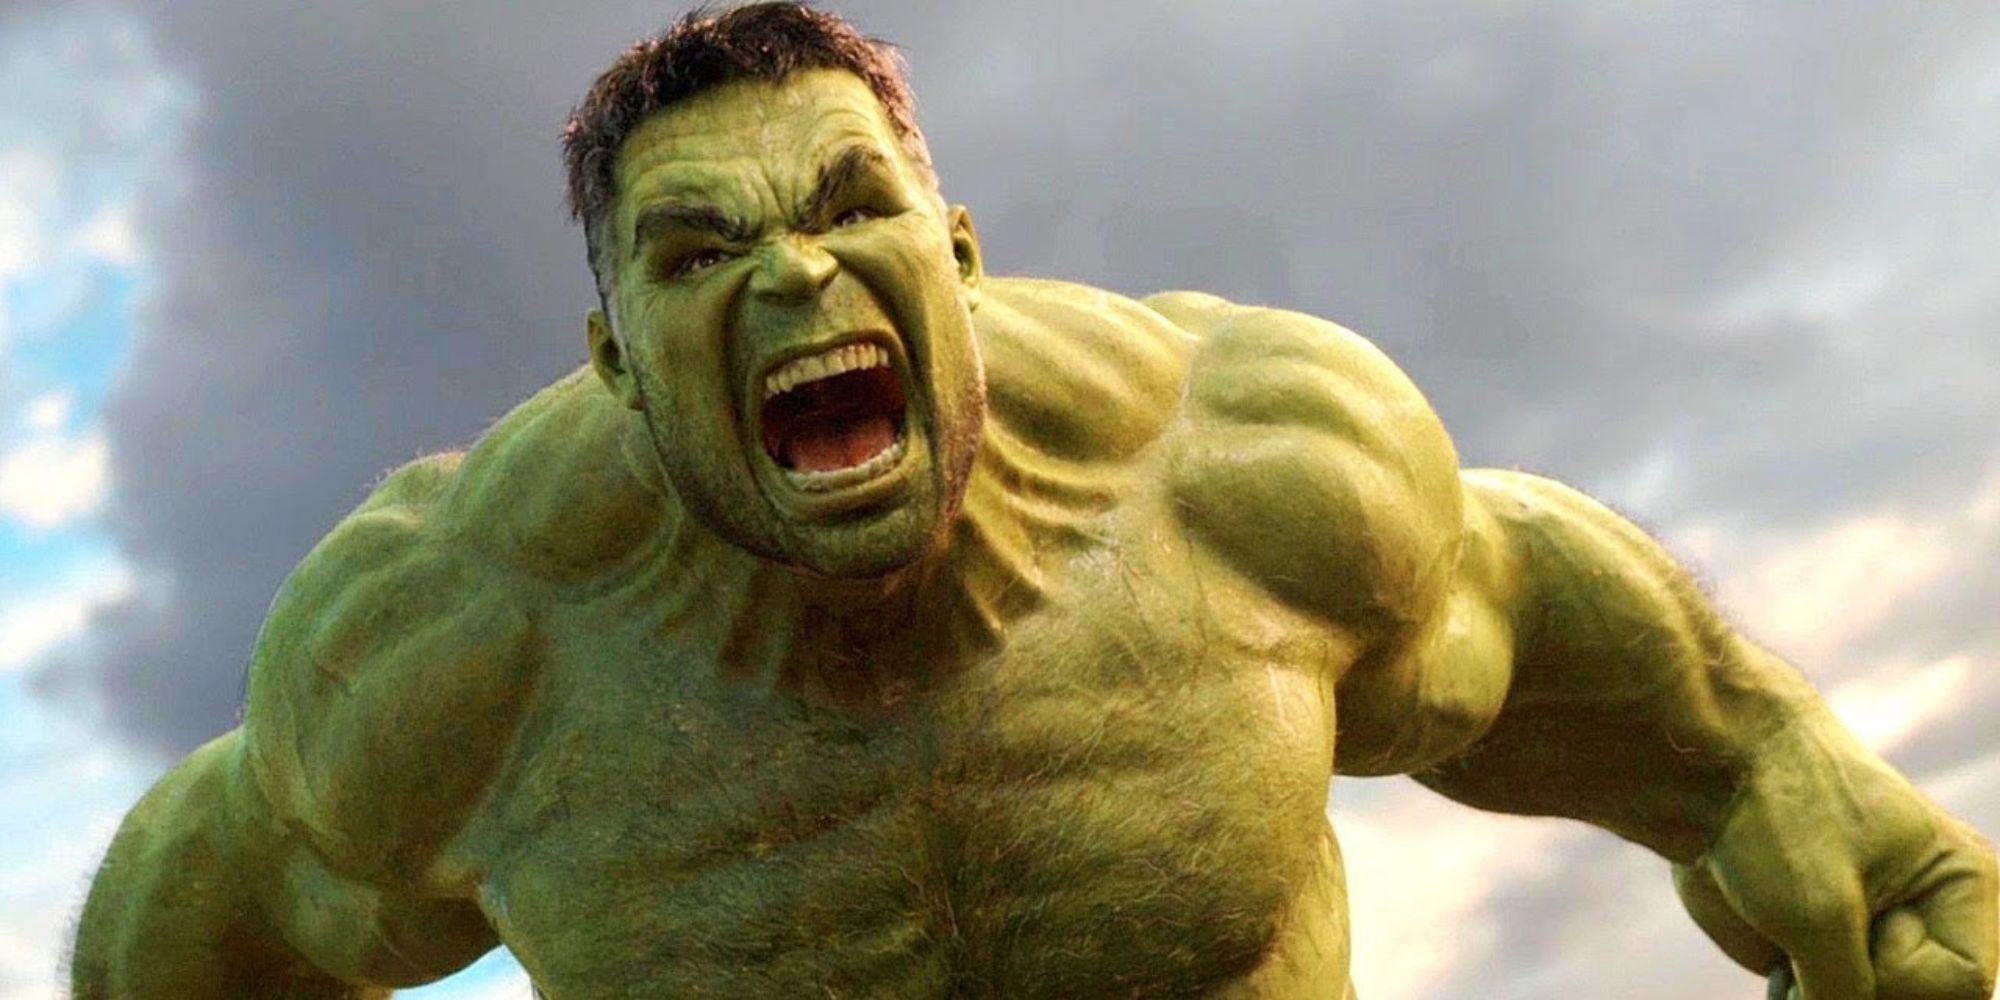 The Hulk (Mark Ruffalo) roars enraged.